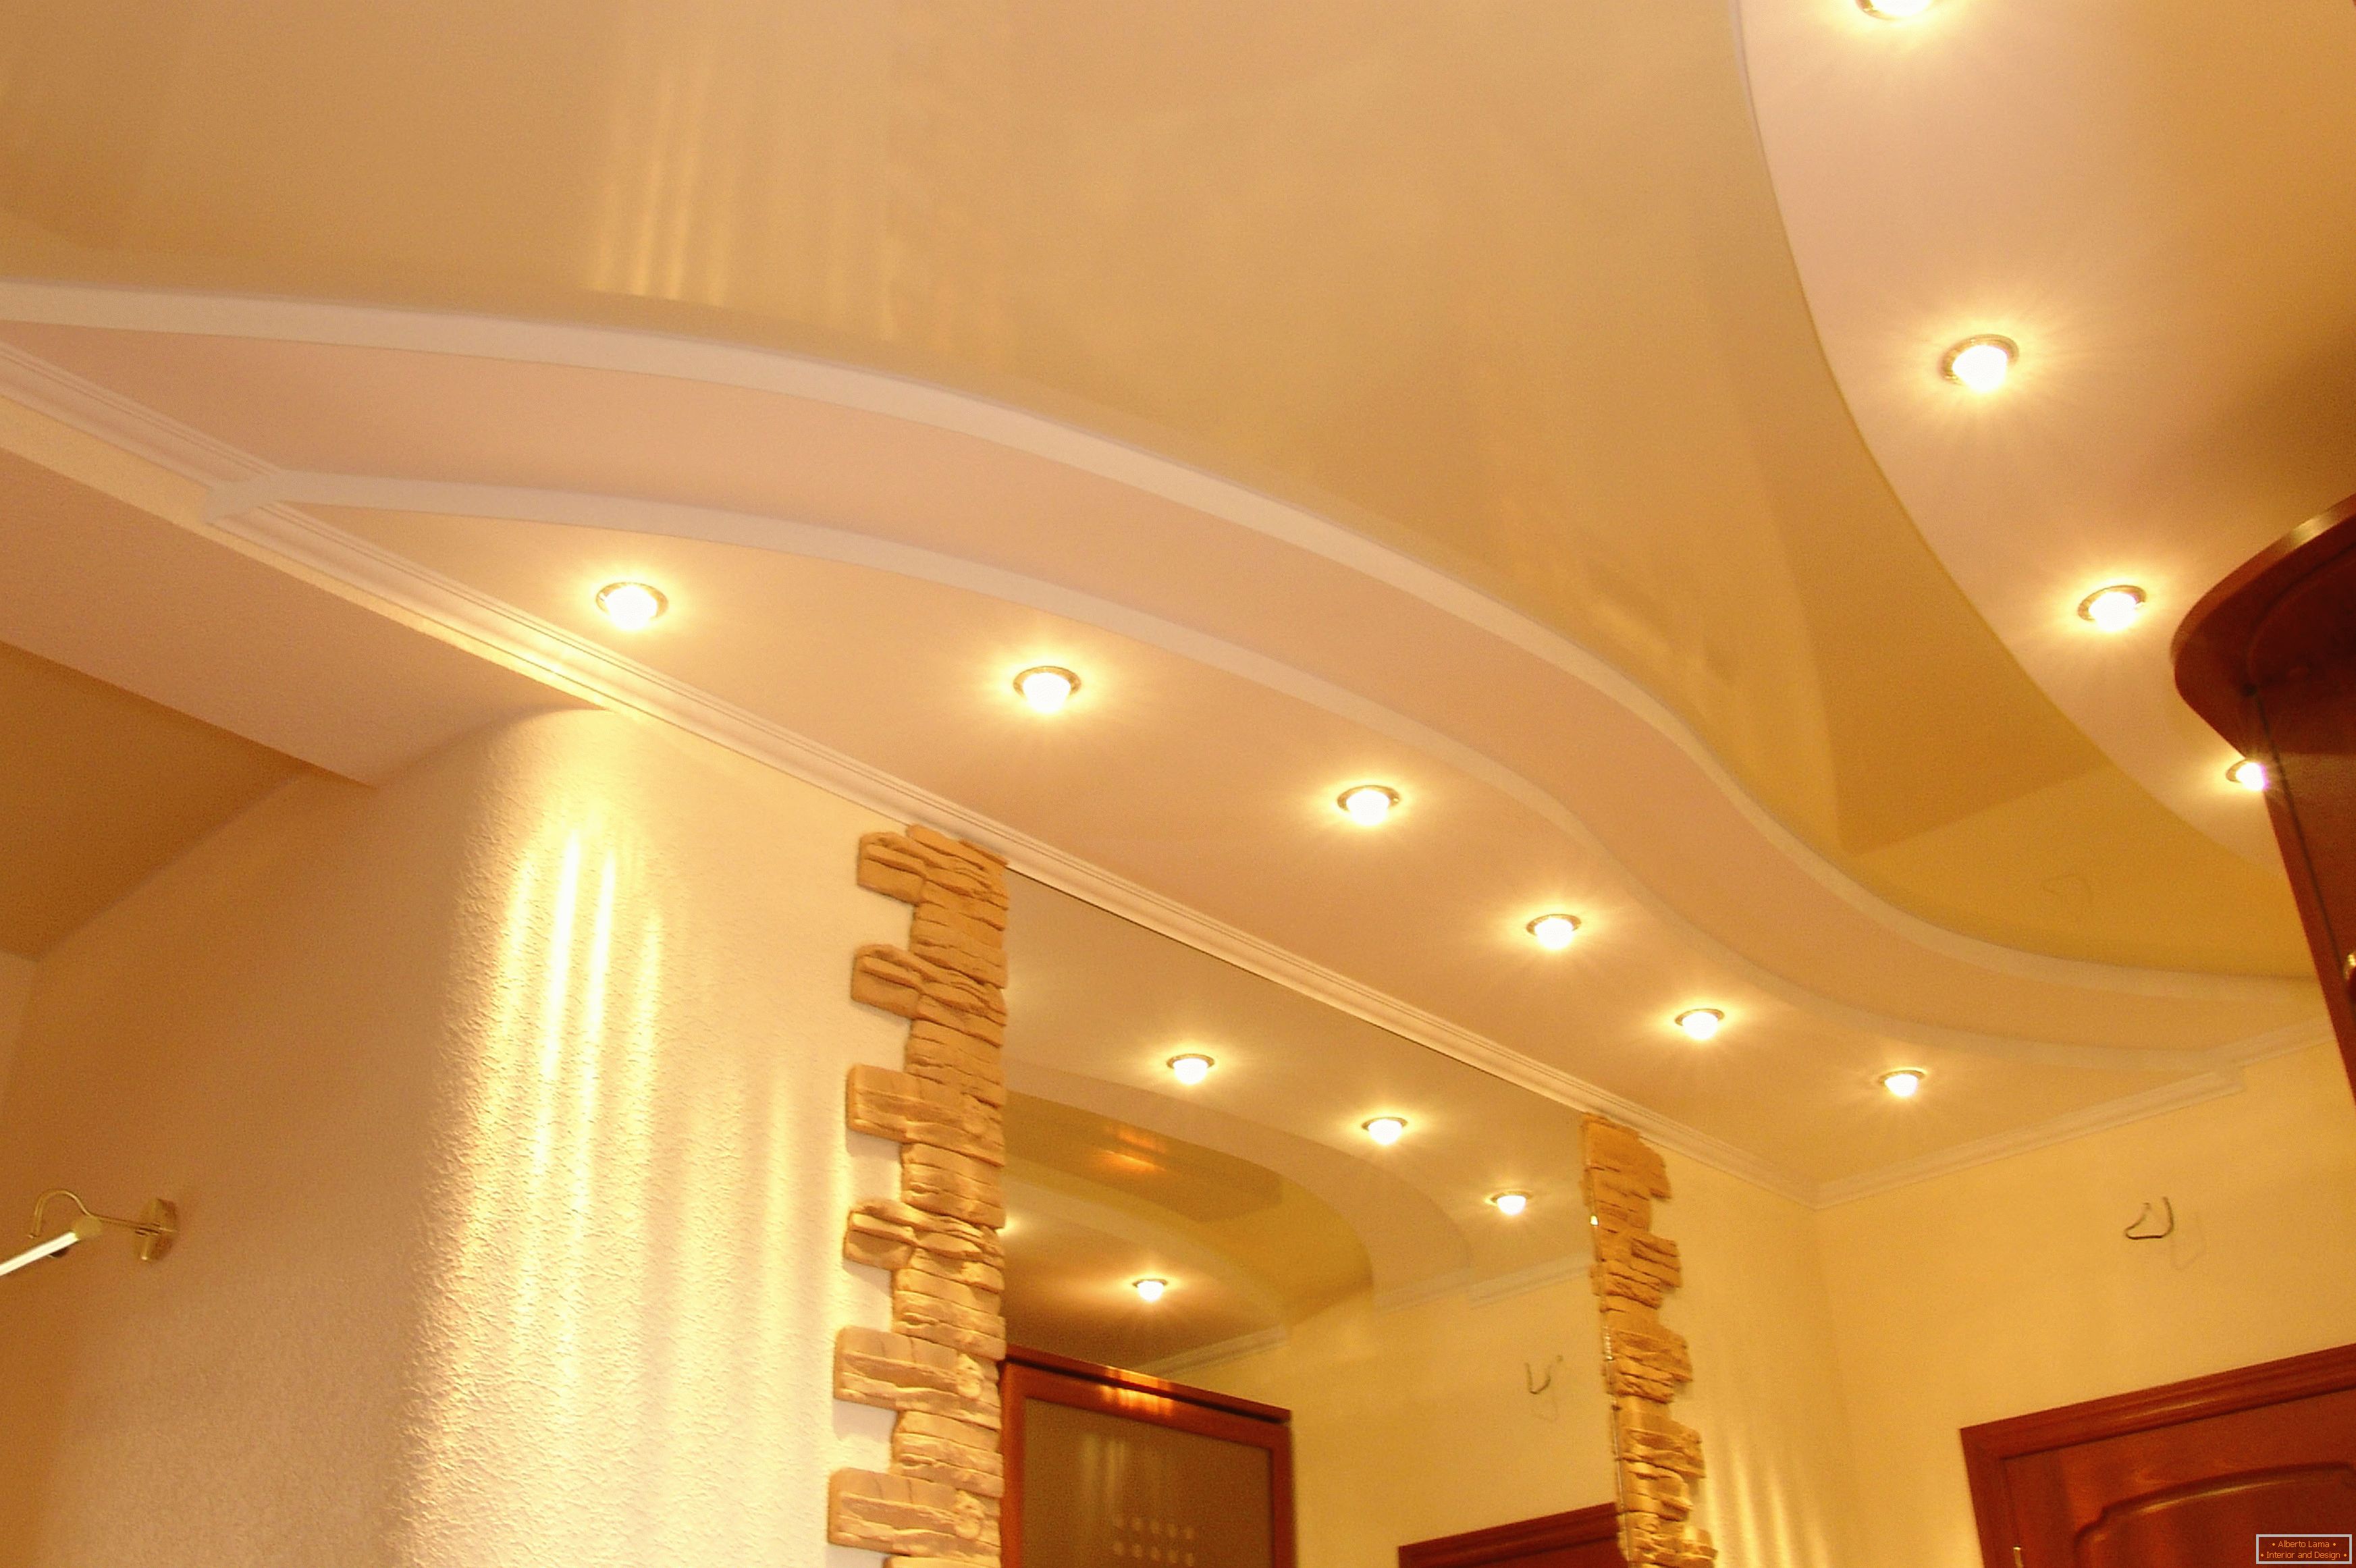 Správně zdobený strop na chodbě. Bodové osvětlení - nejvhodnější volba pro stropní stropy PVC.